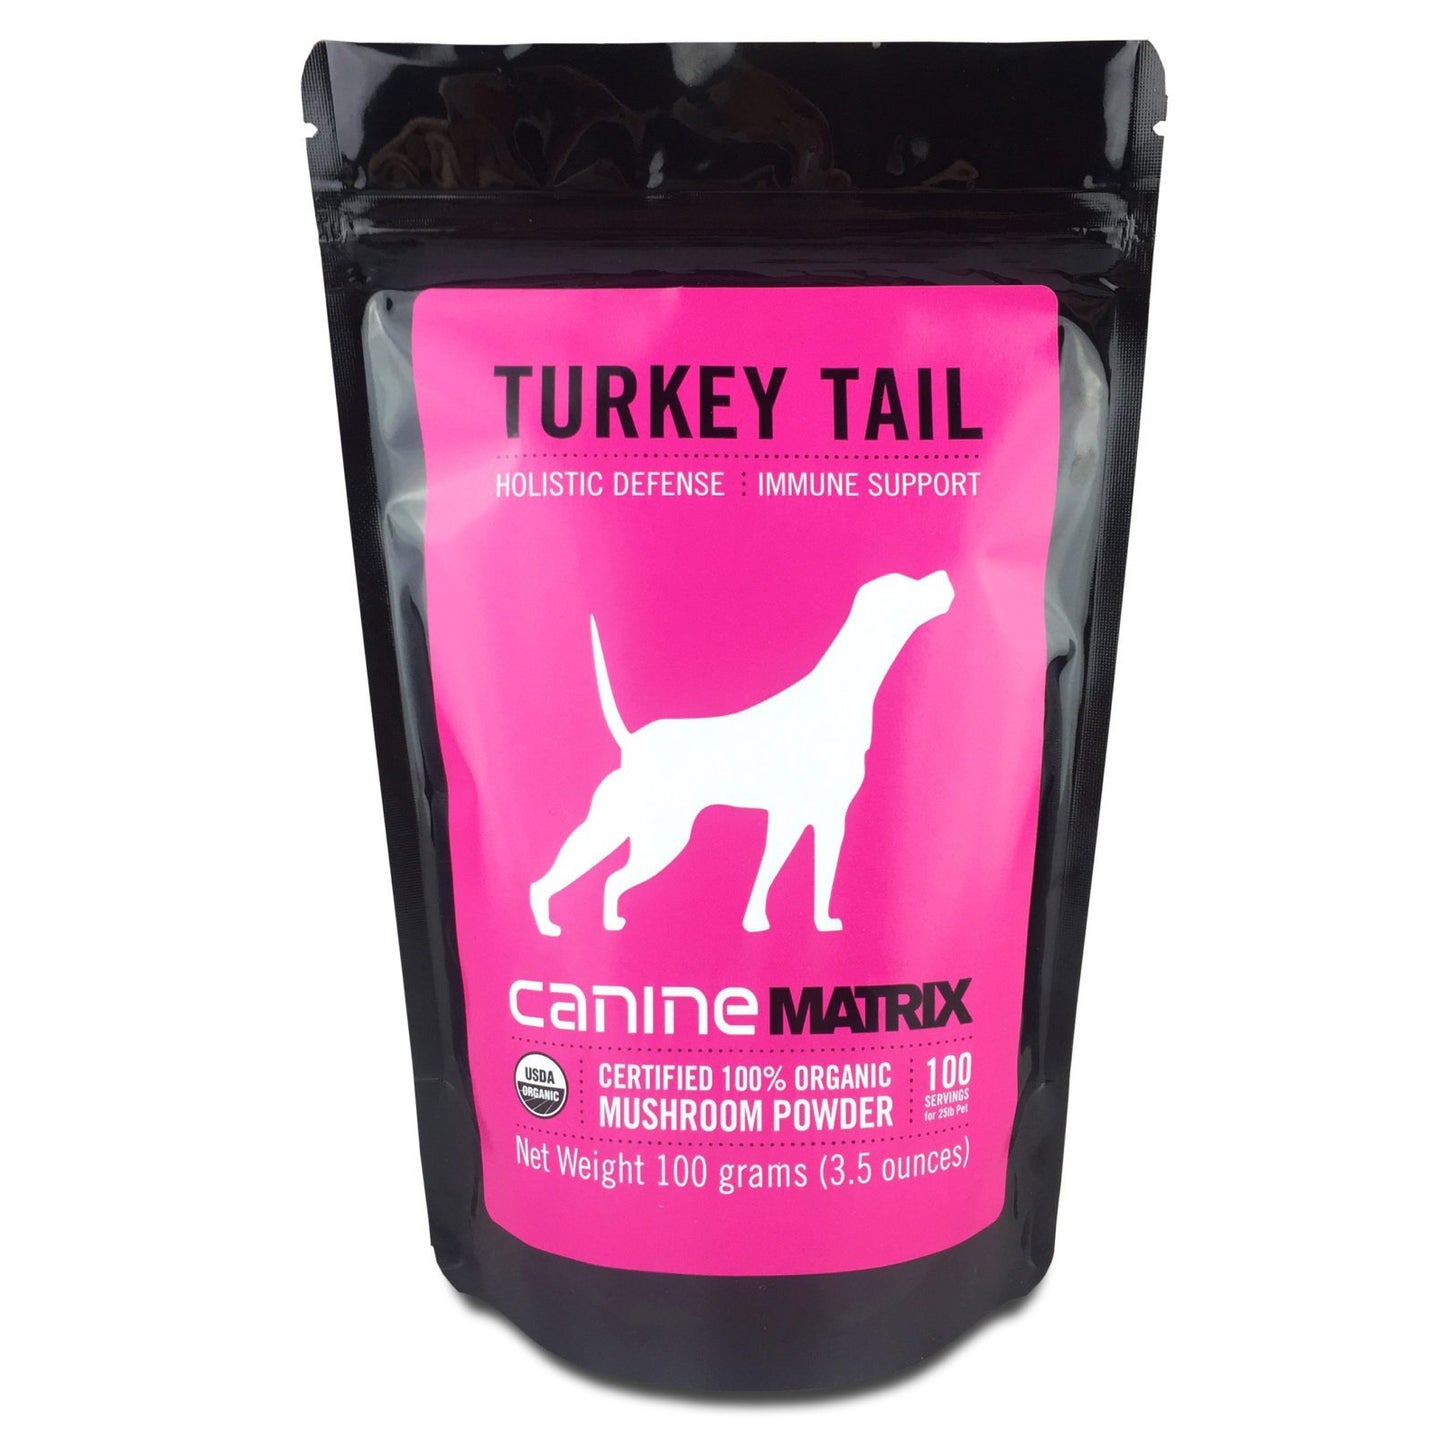 Canine Matrix Turkey Tail Matrix